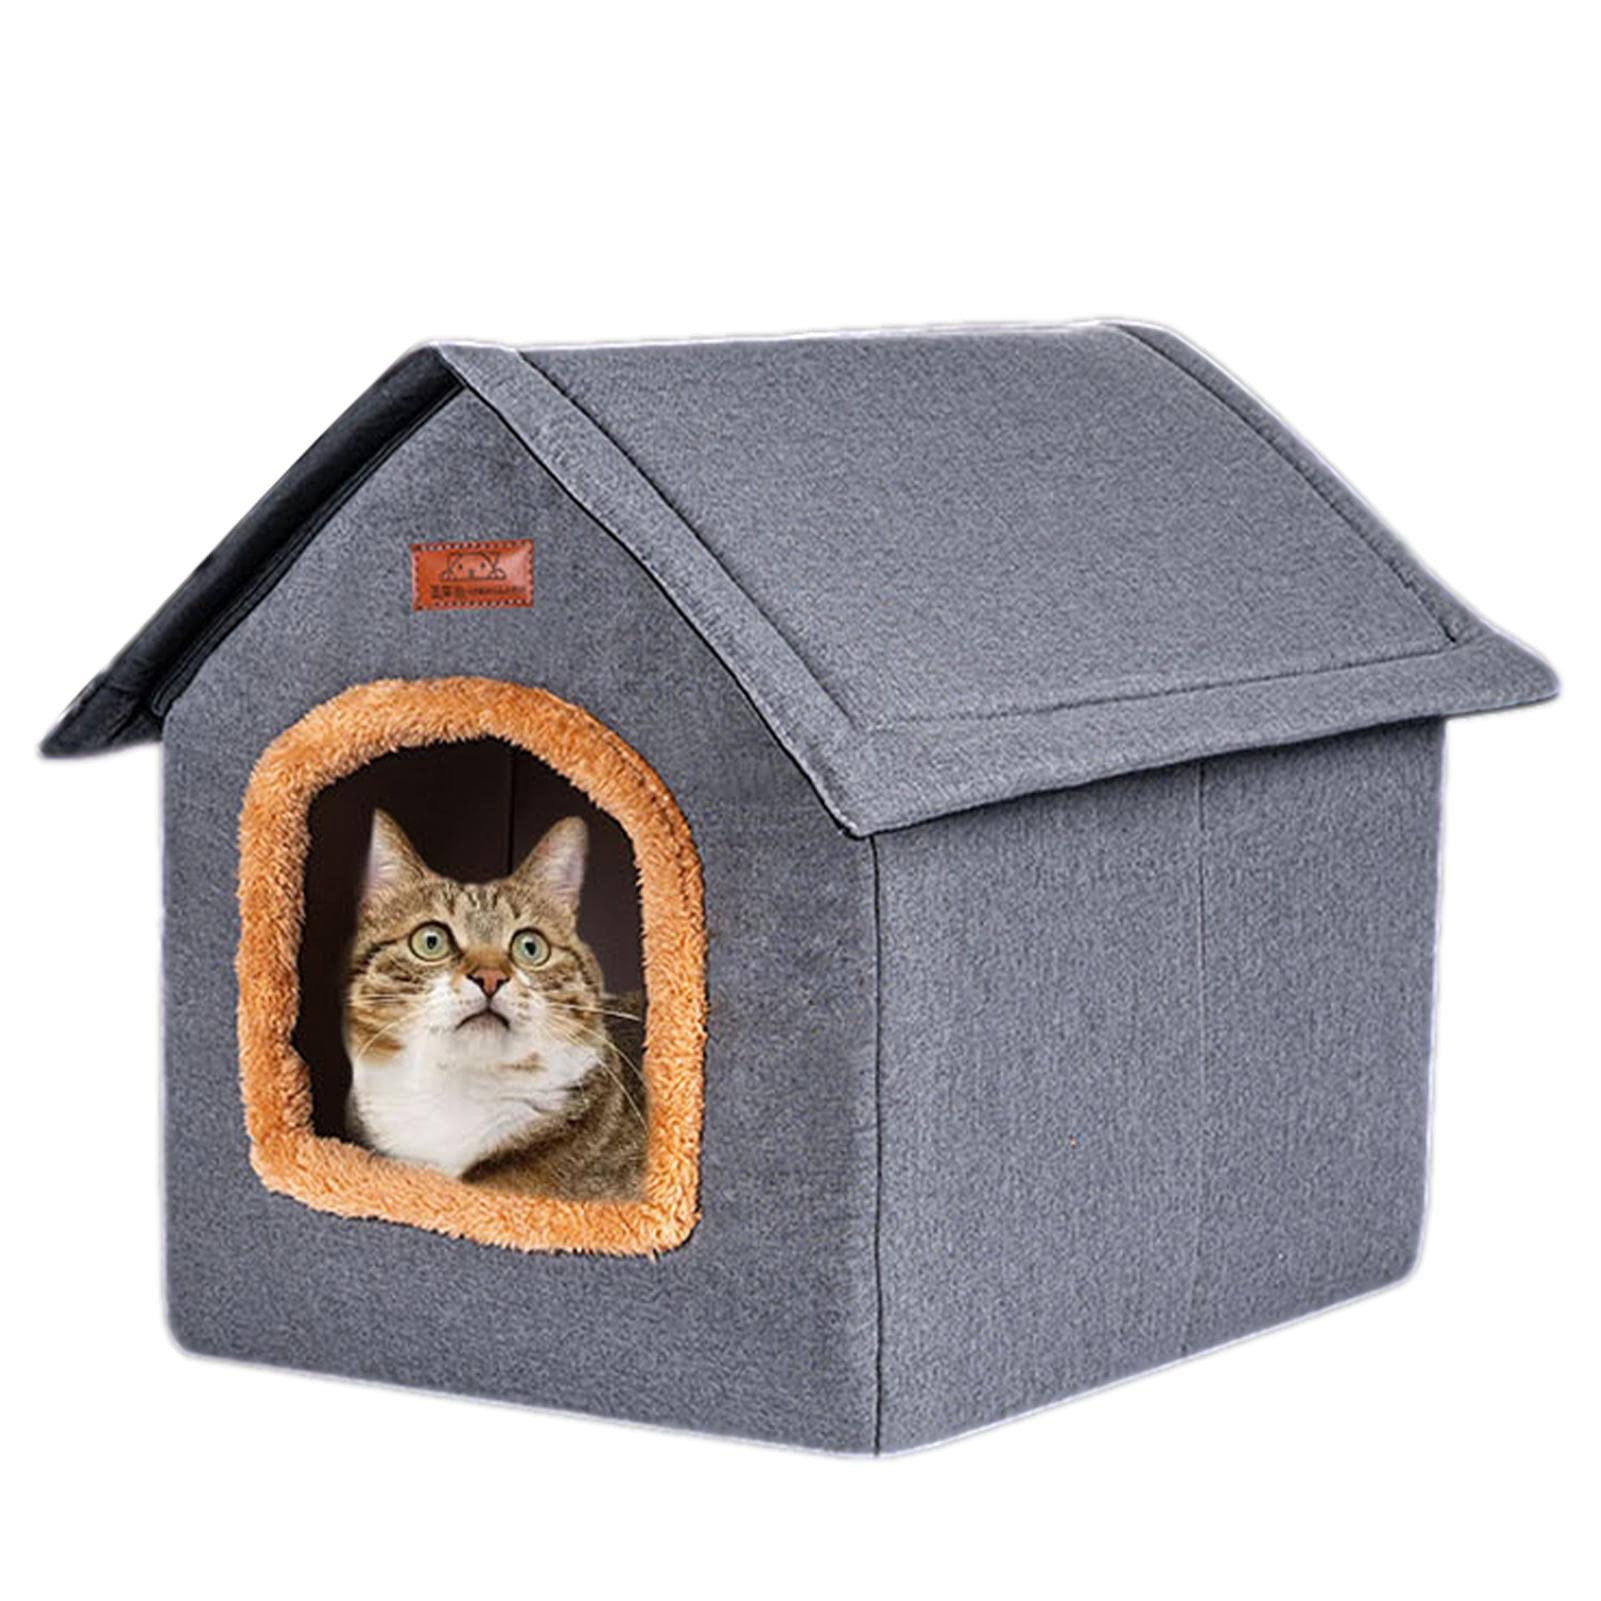 Tragbares Haustierhaus | Outdoor-Katzenbett mit abnehmbarem Design | Outdoor Indoor Haustierbetten für Hunde, Kätzchen und kleine Haustiere, gemütlicher Unterschlupf für Ihre pelzigen Freunde Yusheng